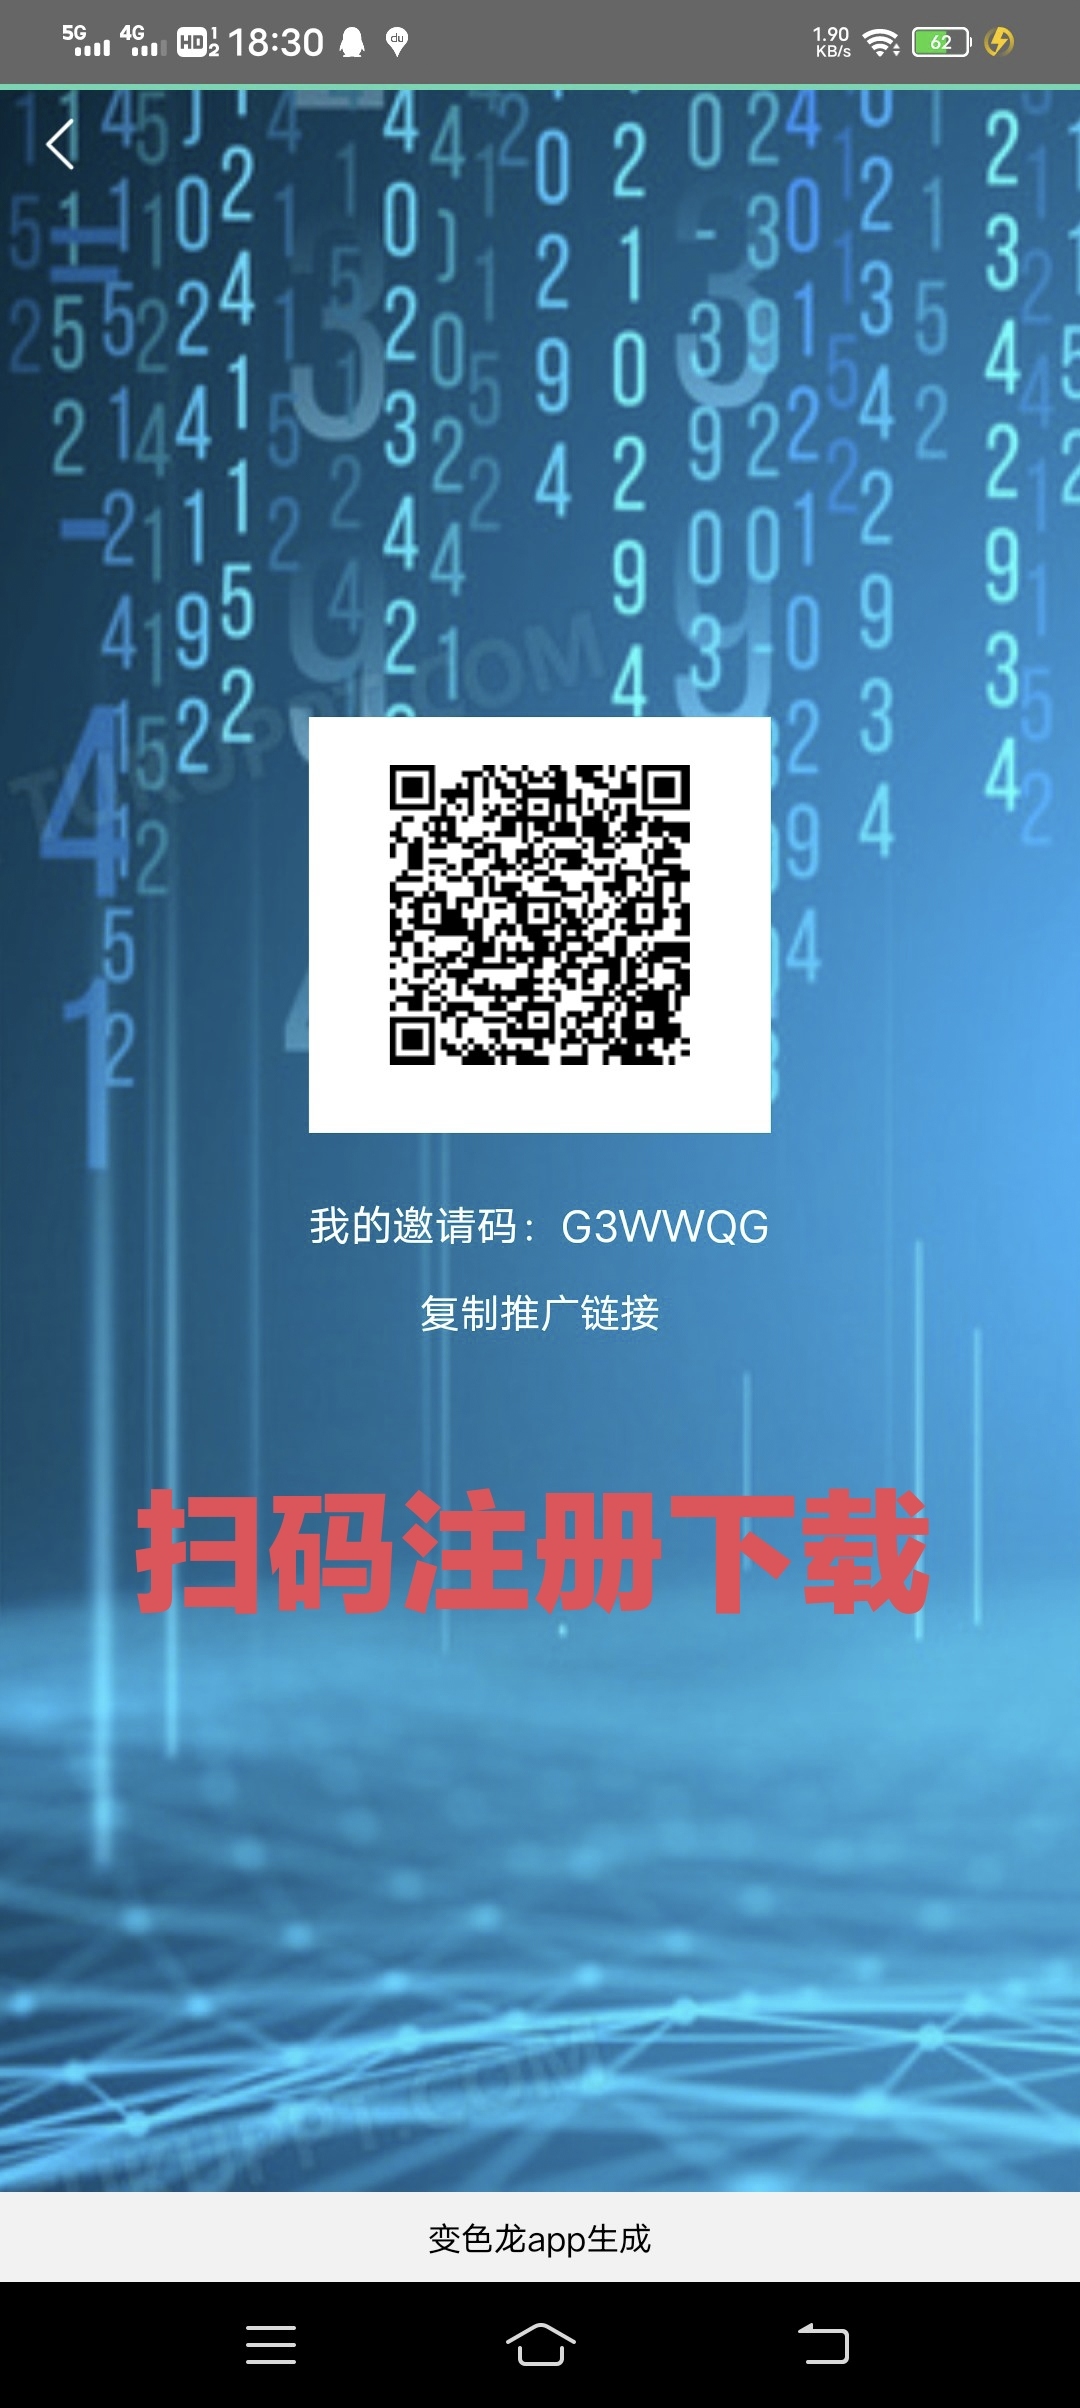 善行汇 零L天王级别 - 315首码项目网-315首码项目网